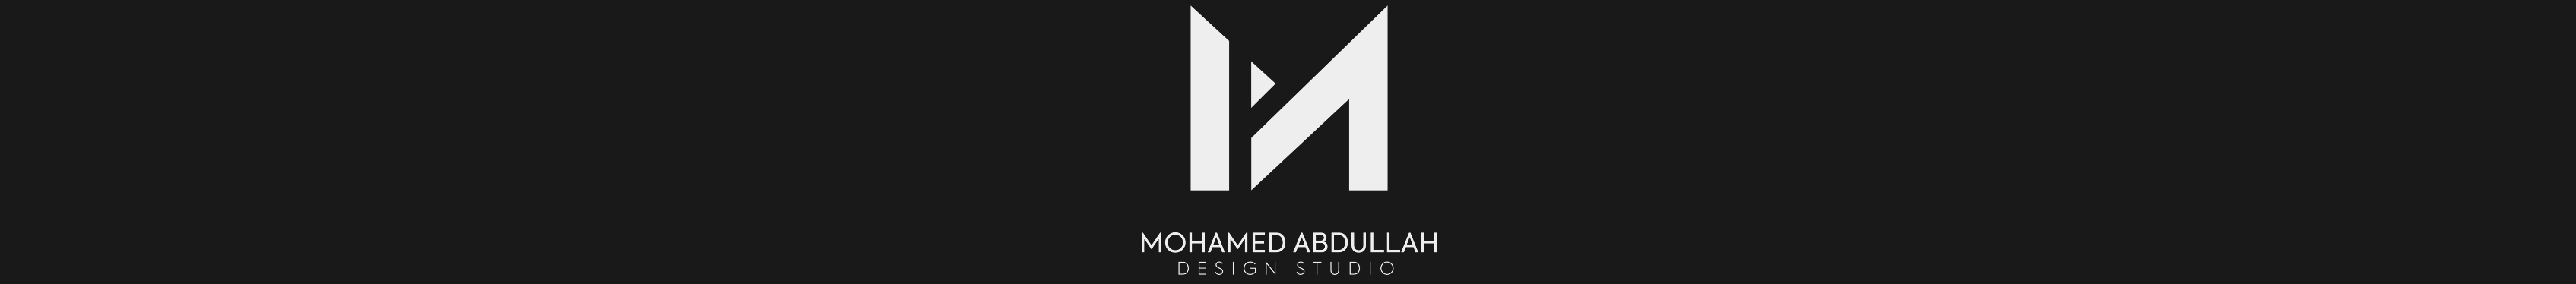 Profil-Banner von Muhammed Abdallah